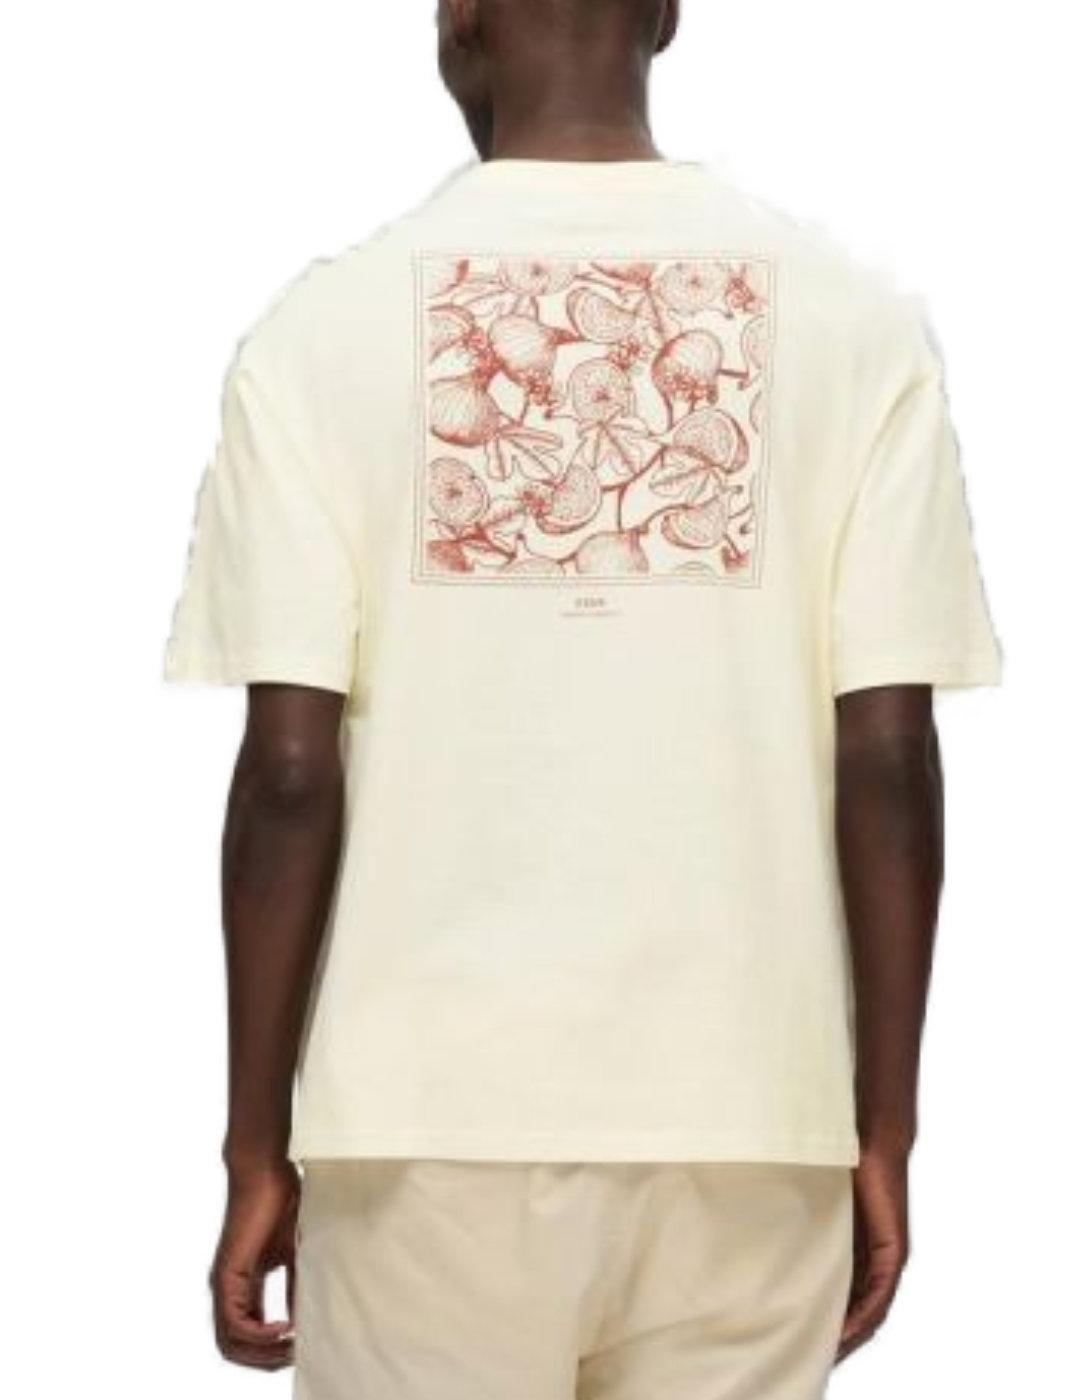 Camiseta Selected Corby blanco roto manga corta para hombre